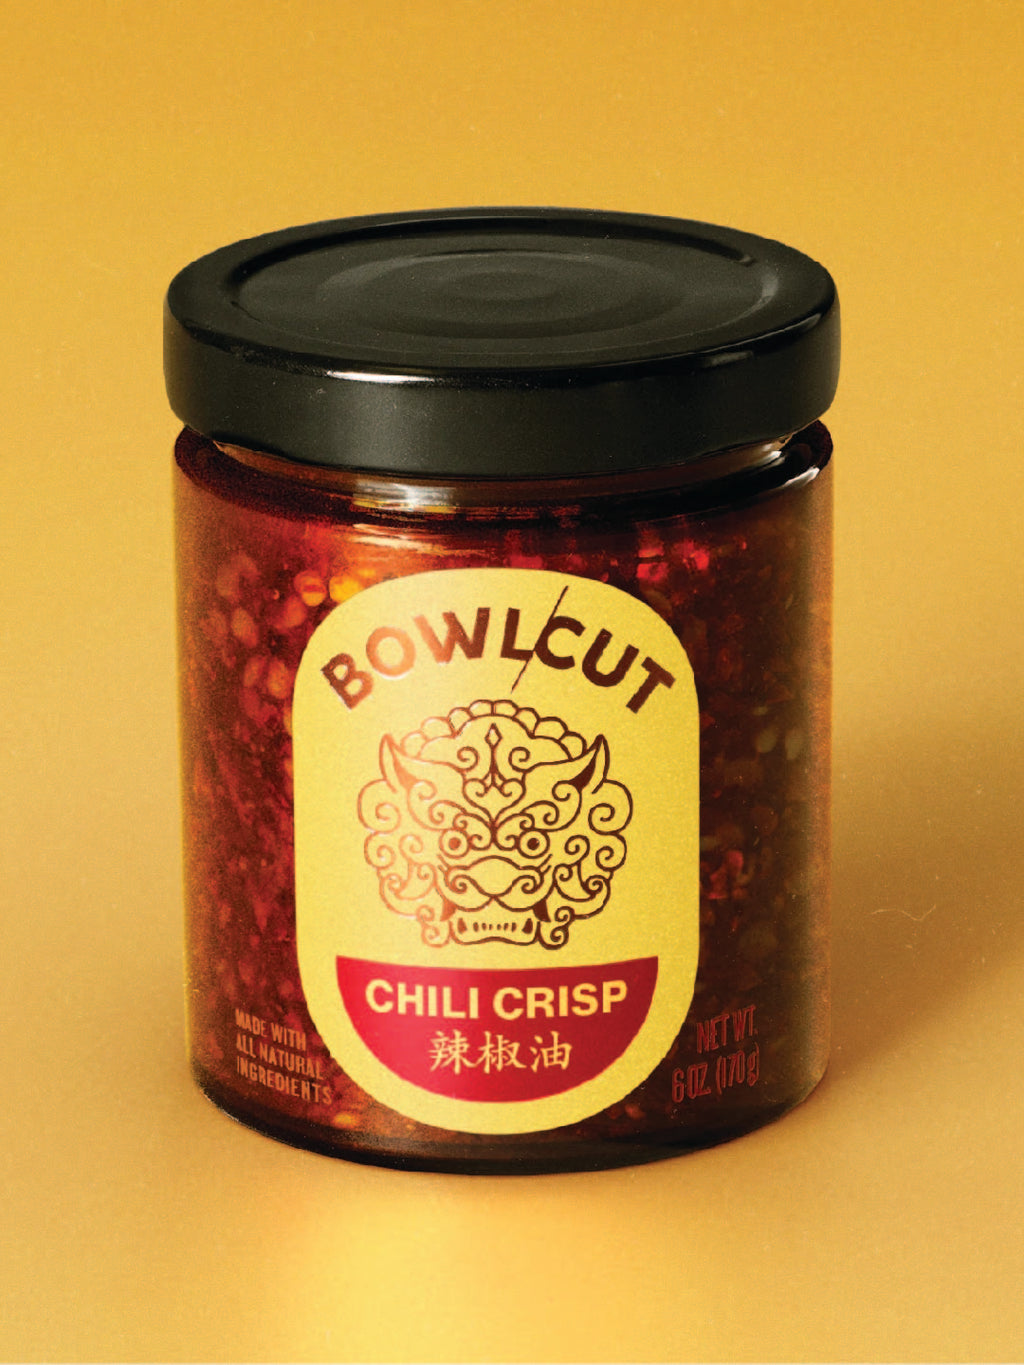 Chili Crisp by Bowlcut